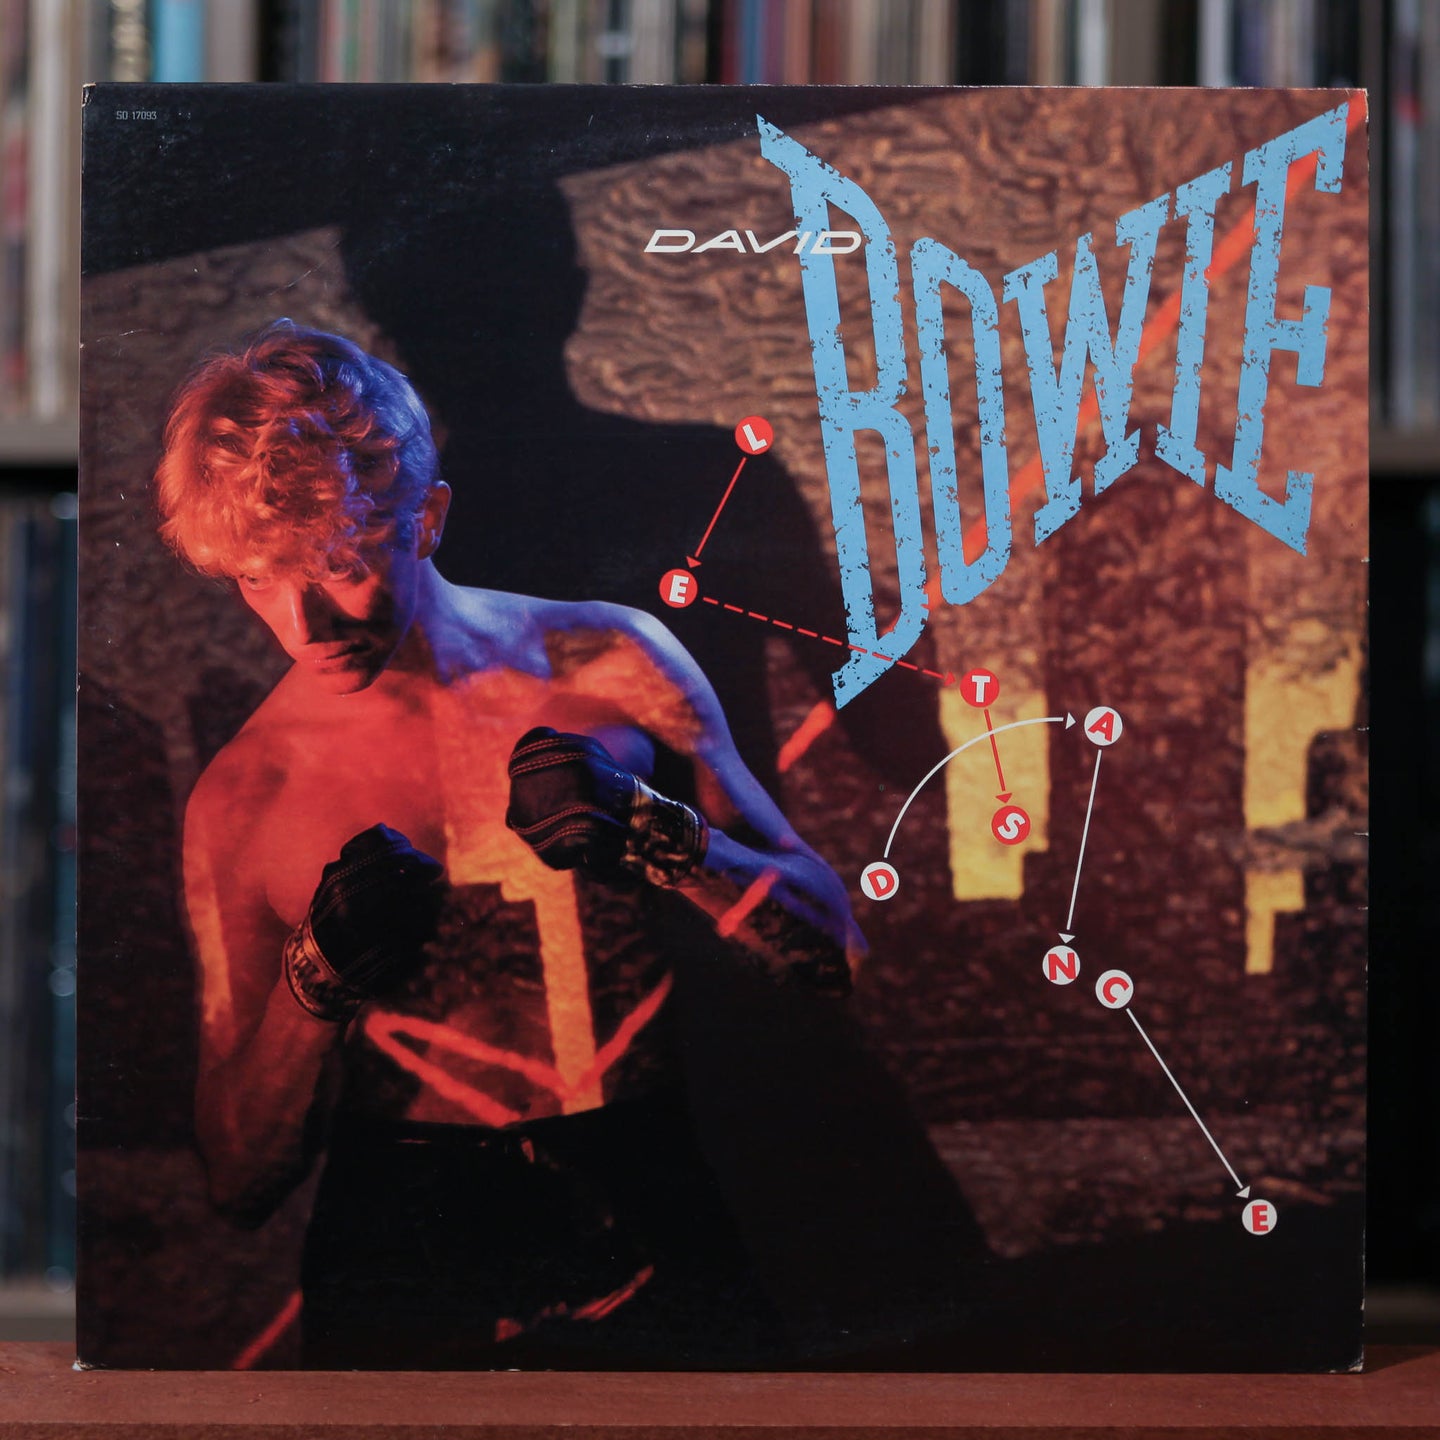 David Bowie - Let's Dance - 1983 EMI, VG+/VG+